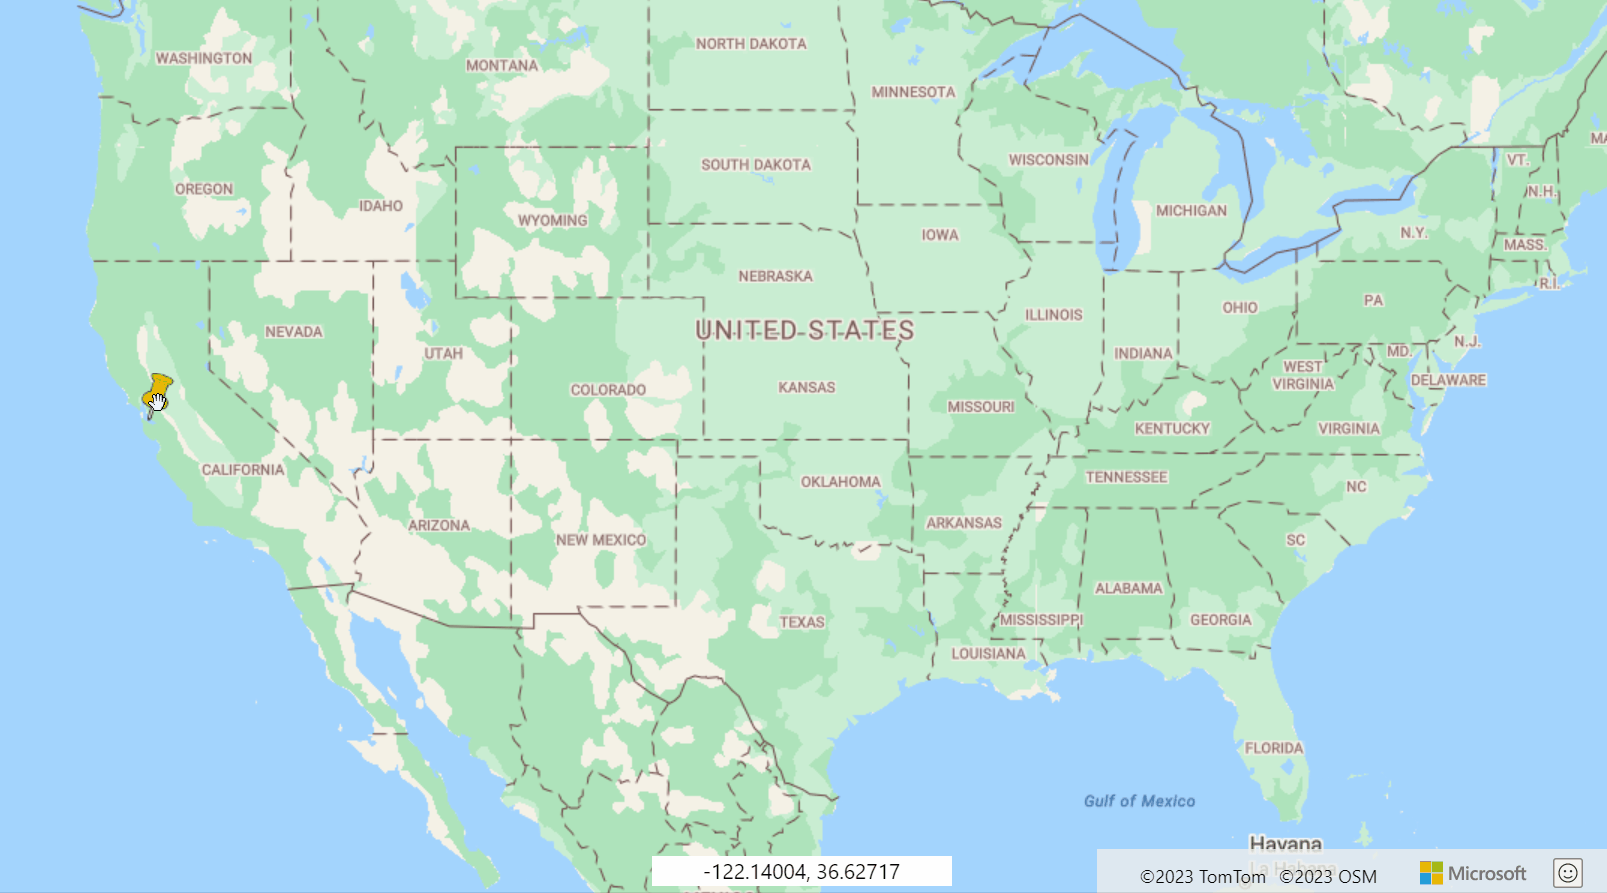 Снимок экрана: карта США с желтым пальцем, перетаскиваемым для демонстрации перетаскиваемого html-маркера.